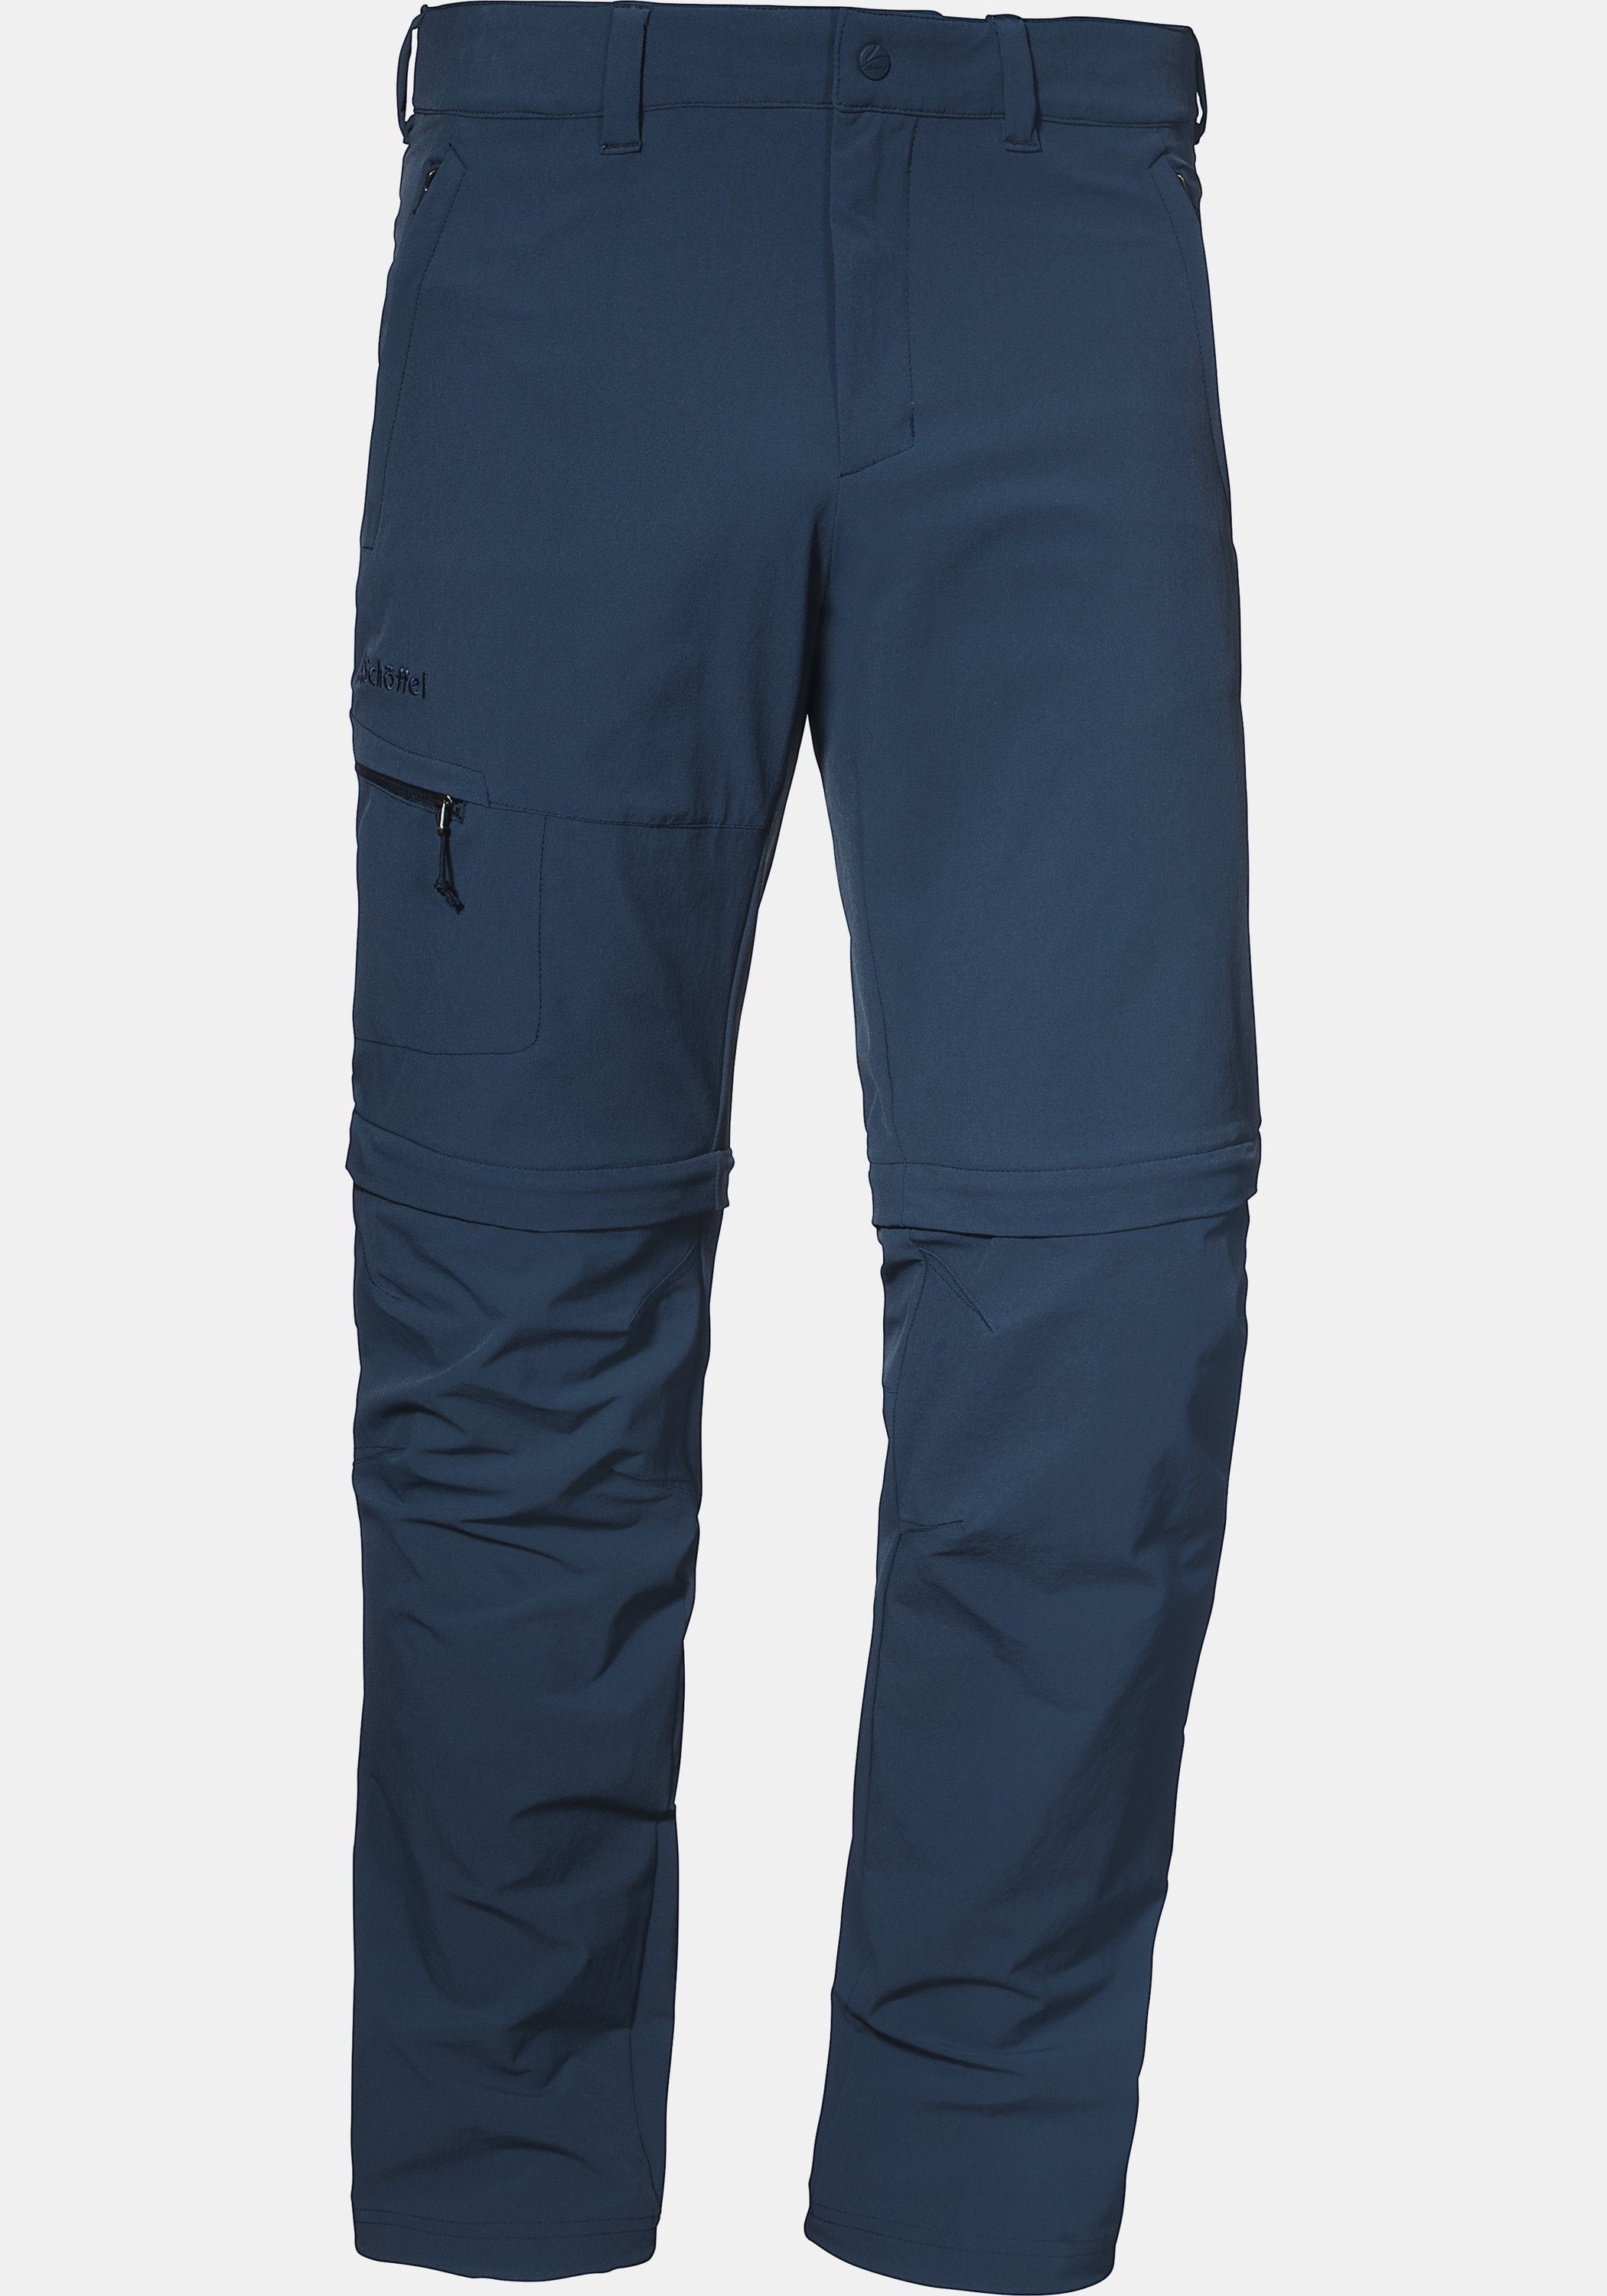 Koper1 Zip-away-Hose Off Pants Schöffel Zip dunkelblau